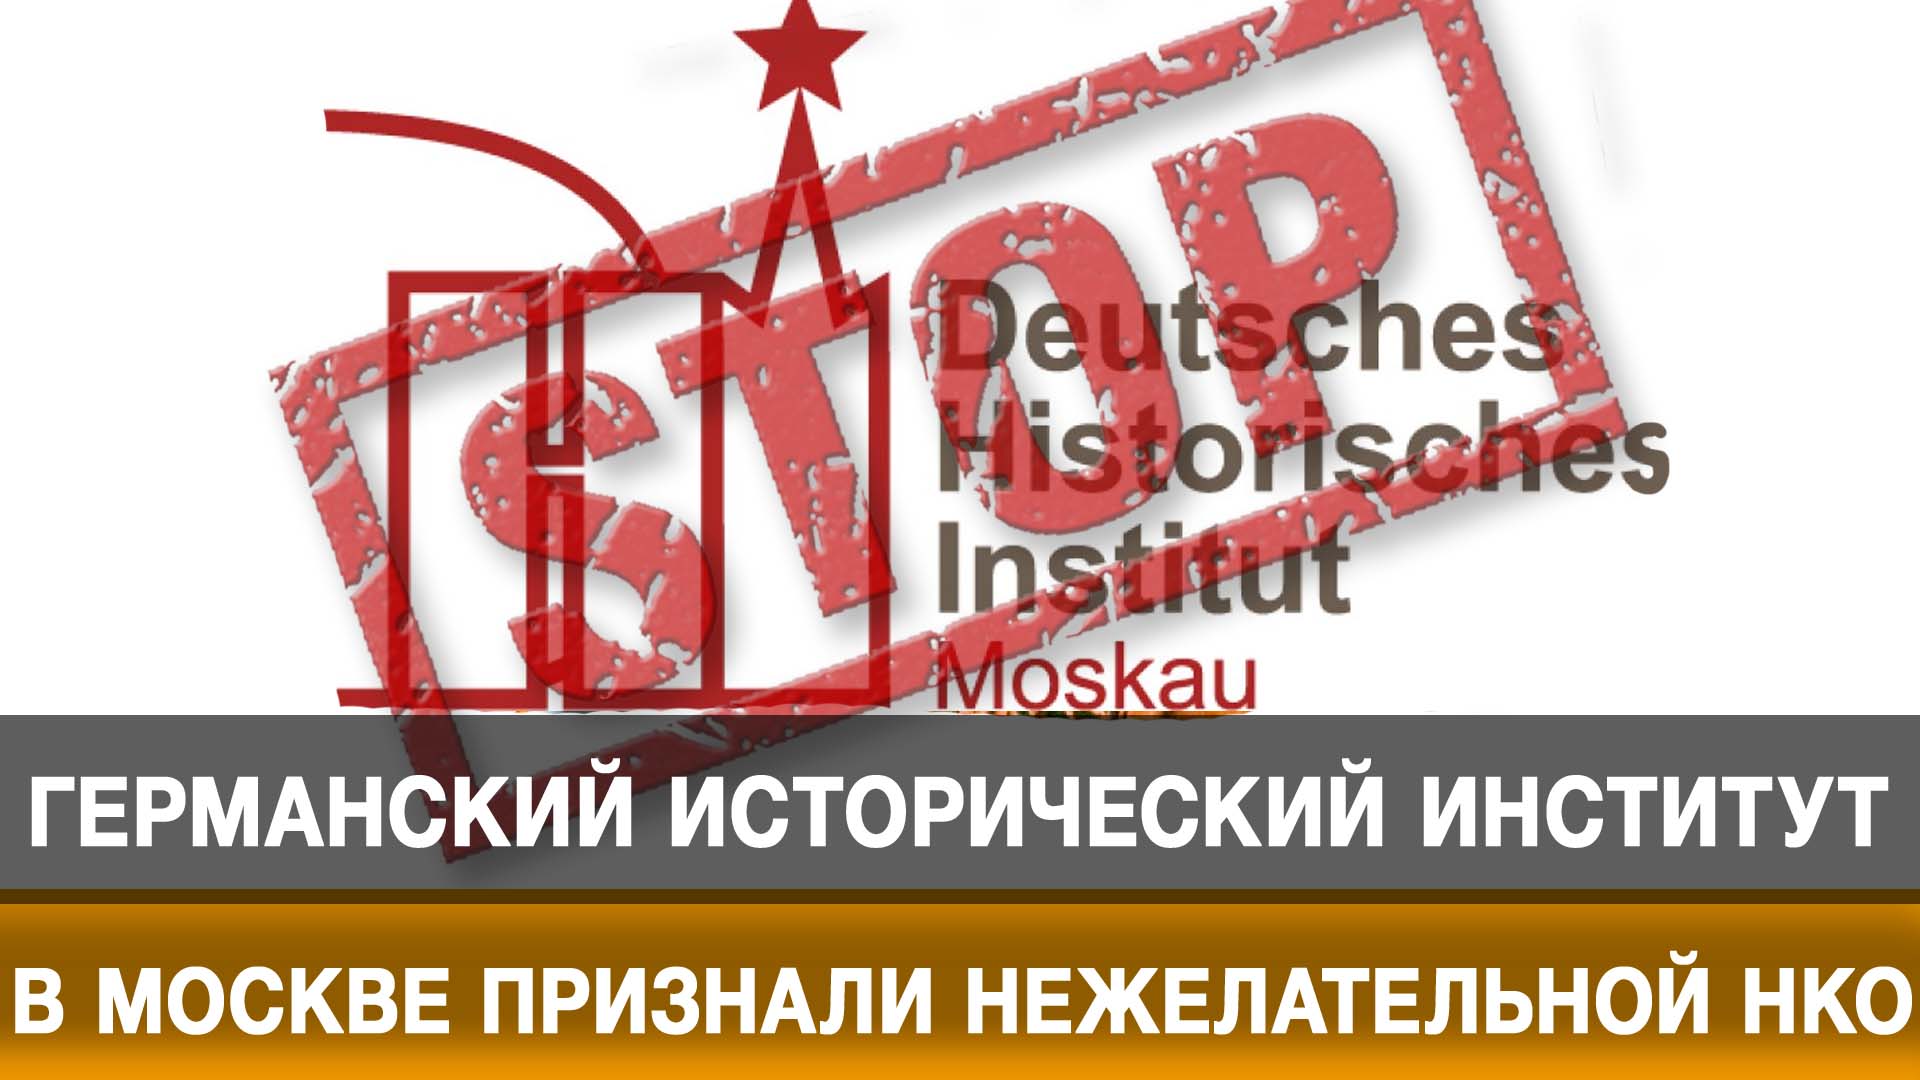 Германский исторический институт в Москве признали нежелательной НКО